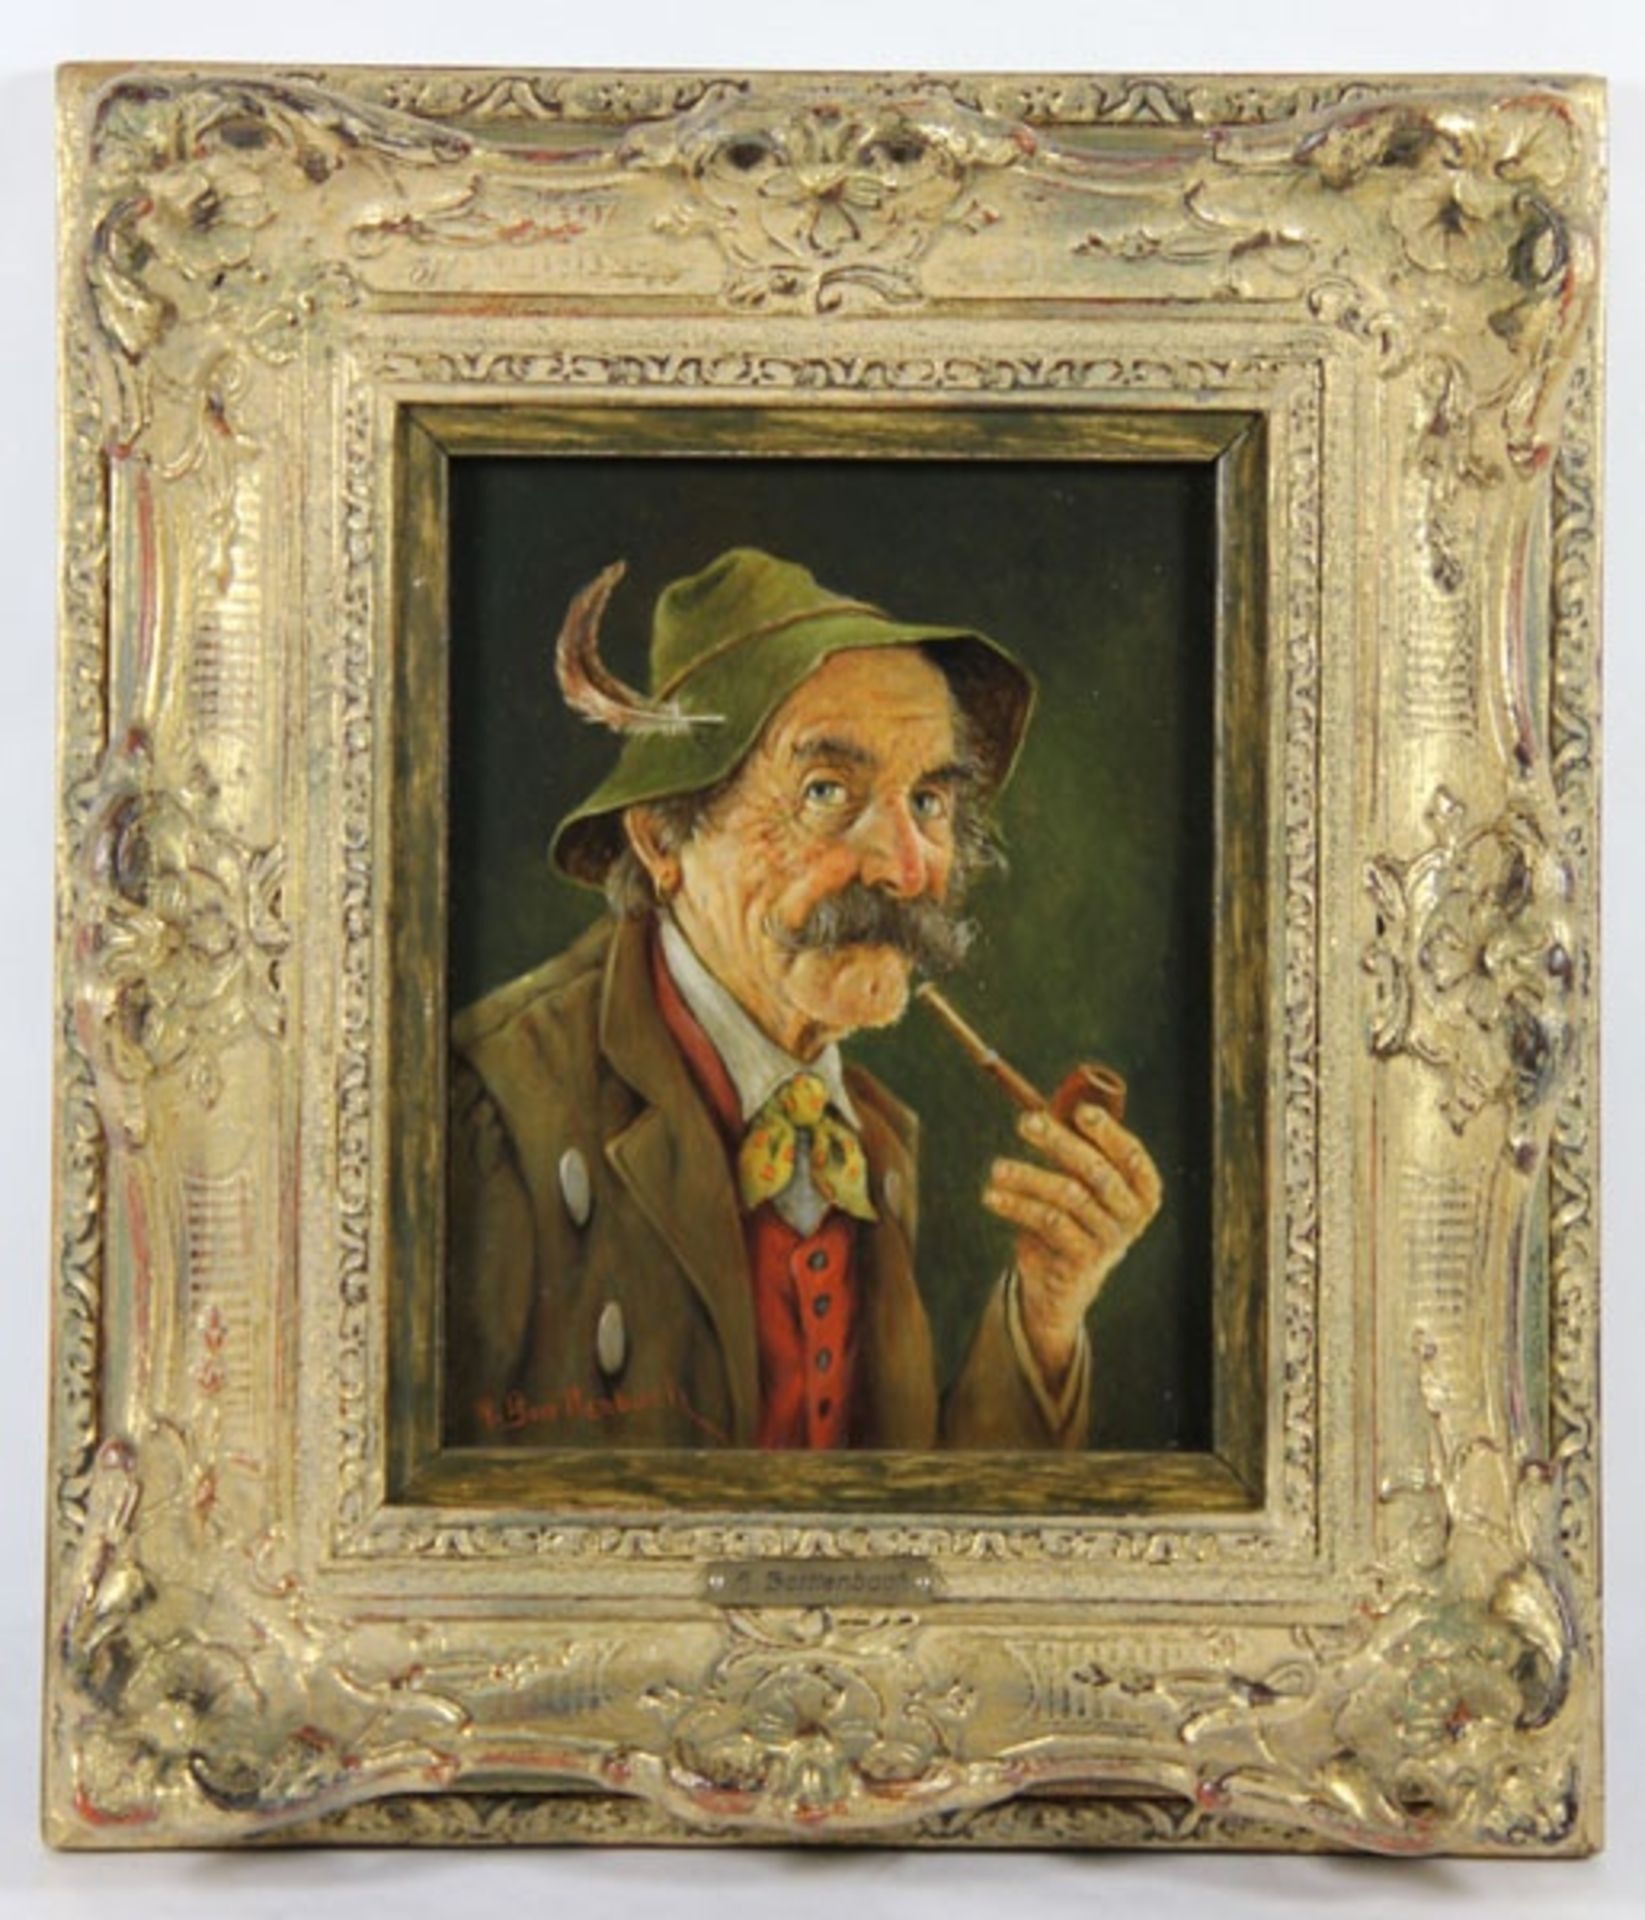 Barttenbach, Hans1908-?, Brustbild eines alten Mannes mit Schnauzbart, er trägt einen Federh